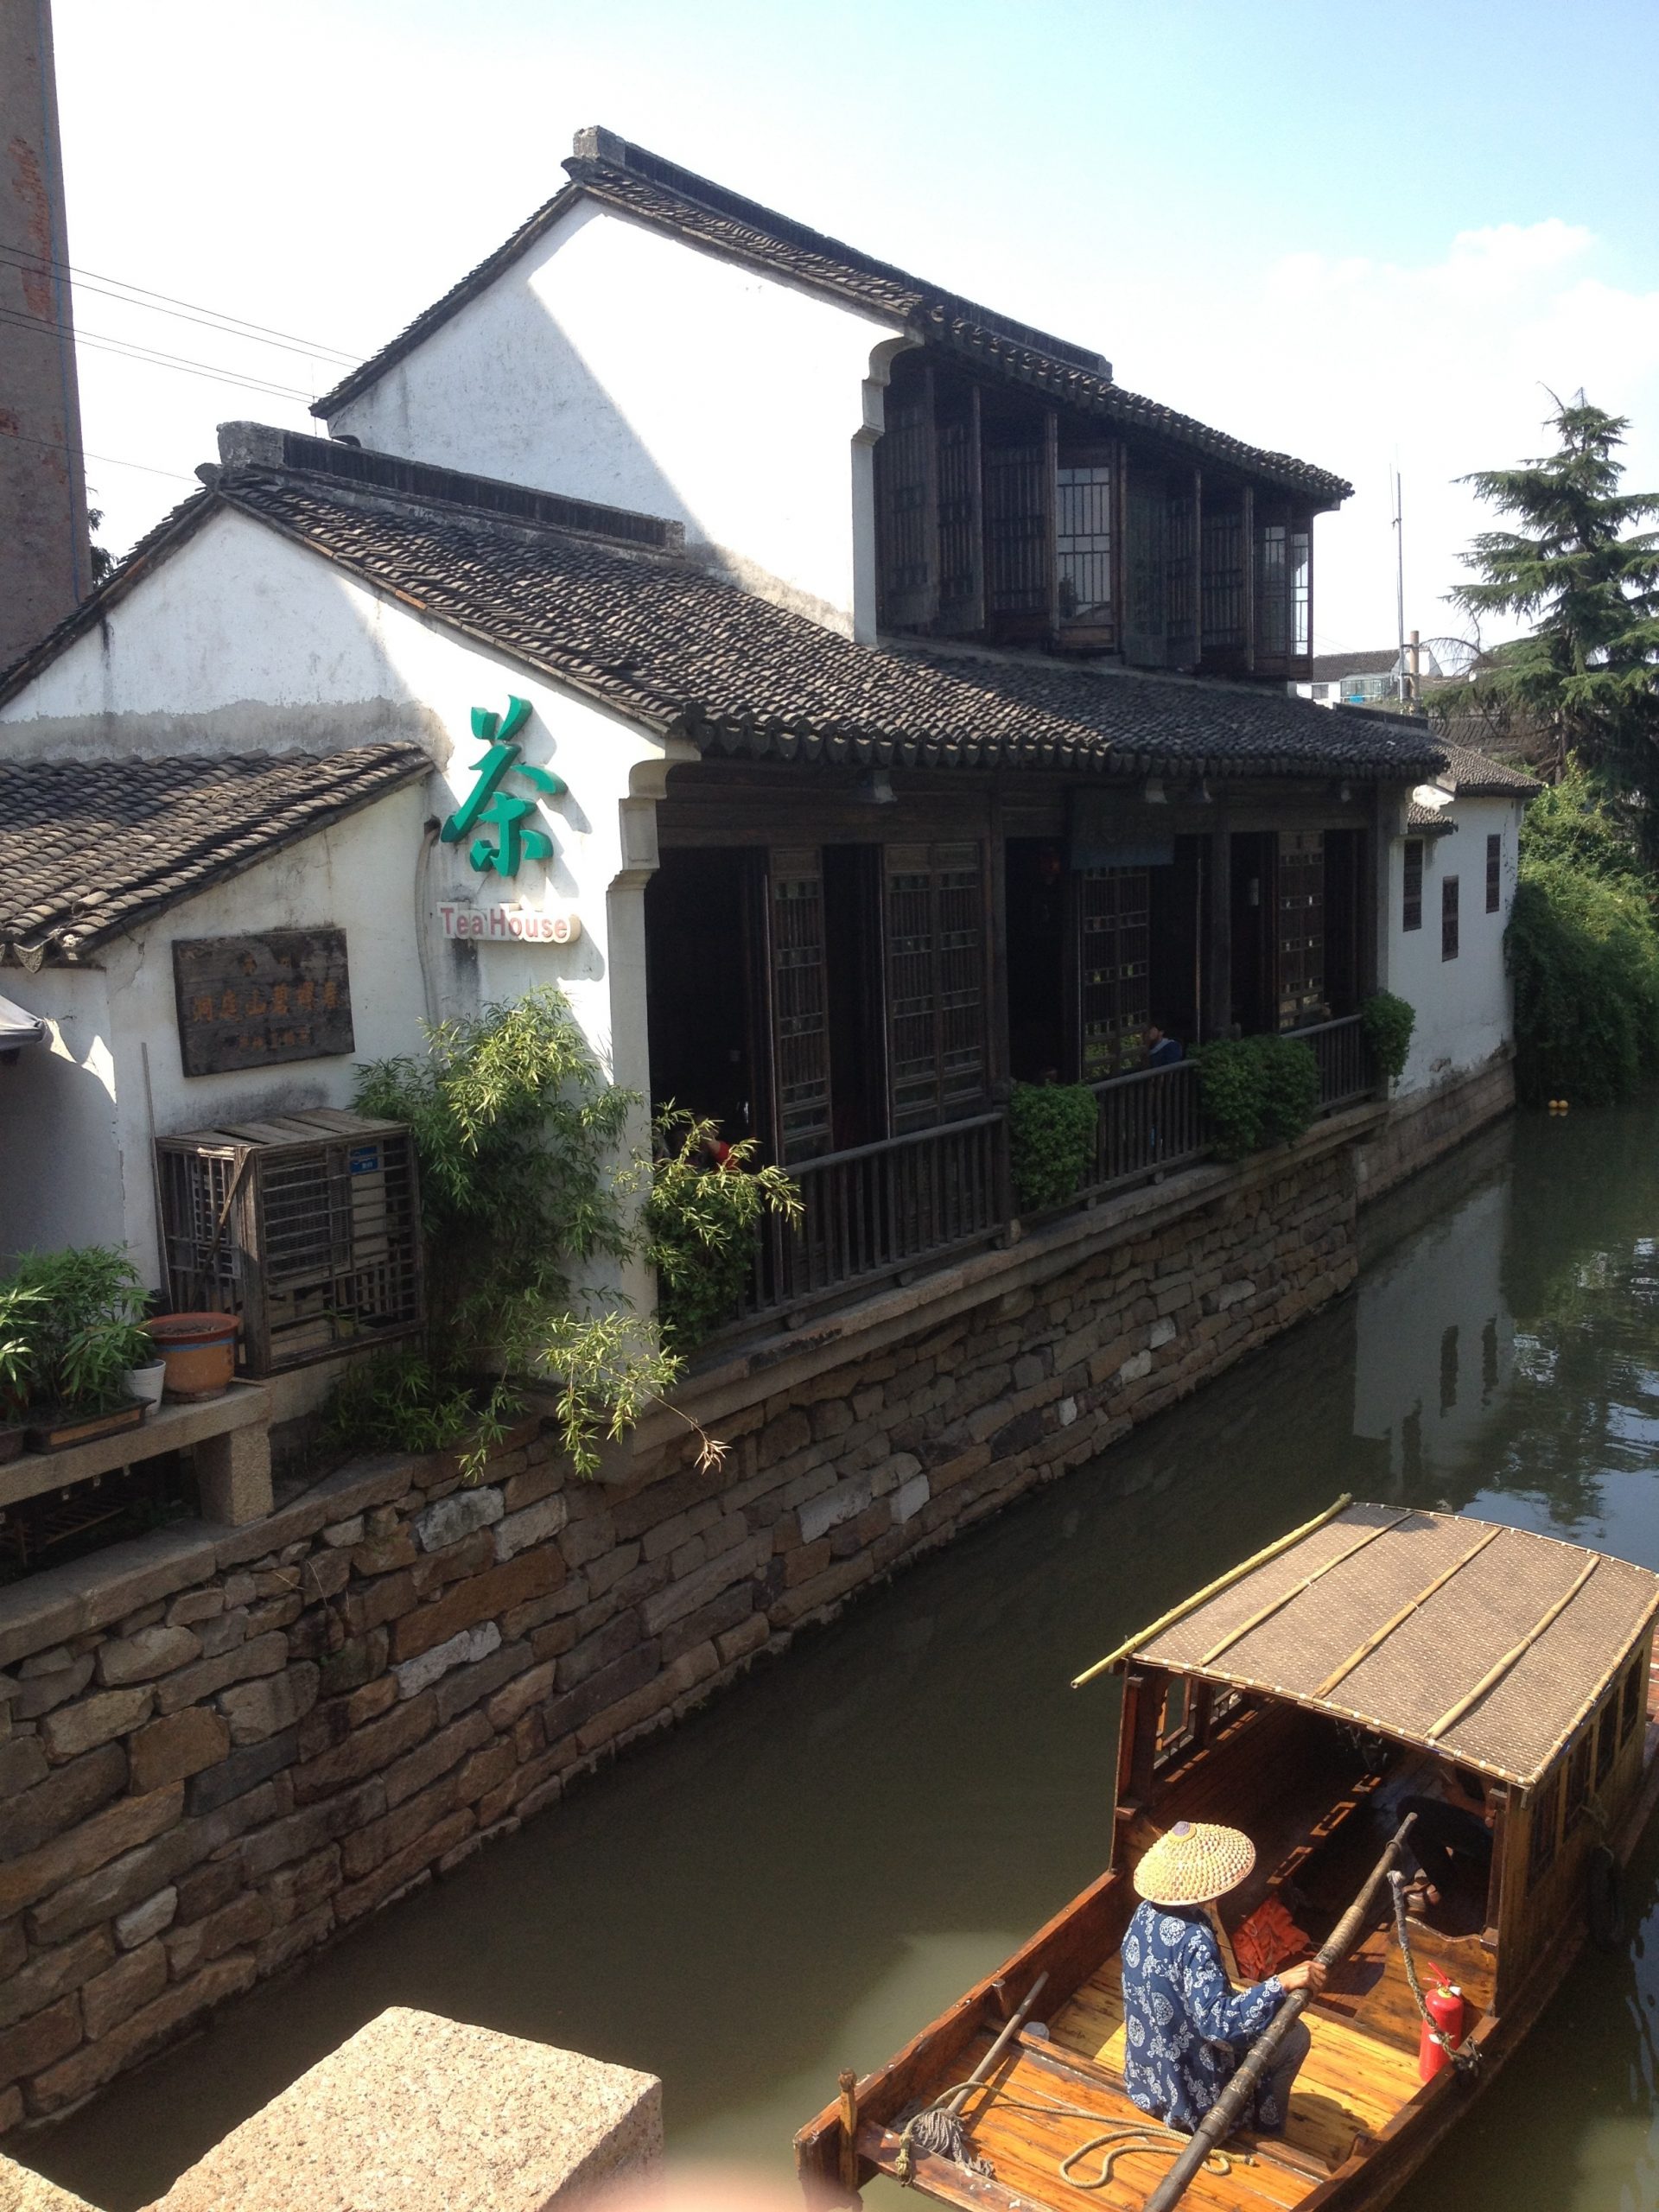 Canal boat Suzhou China